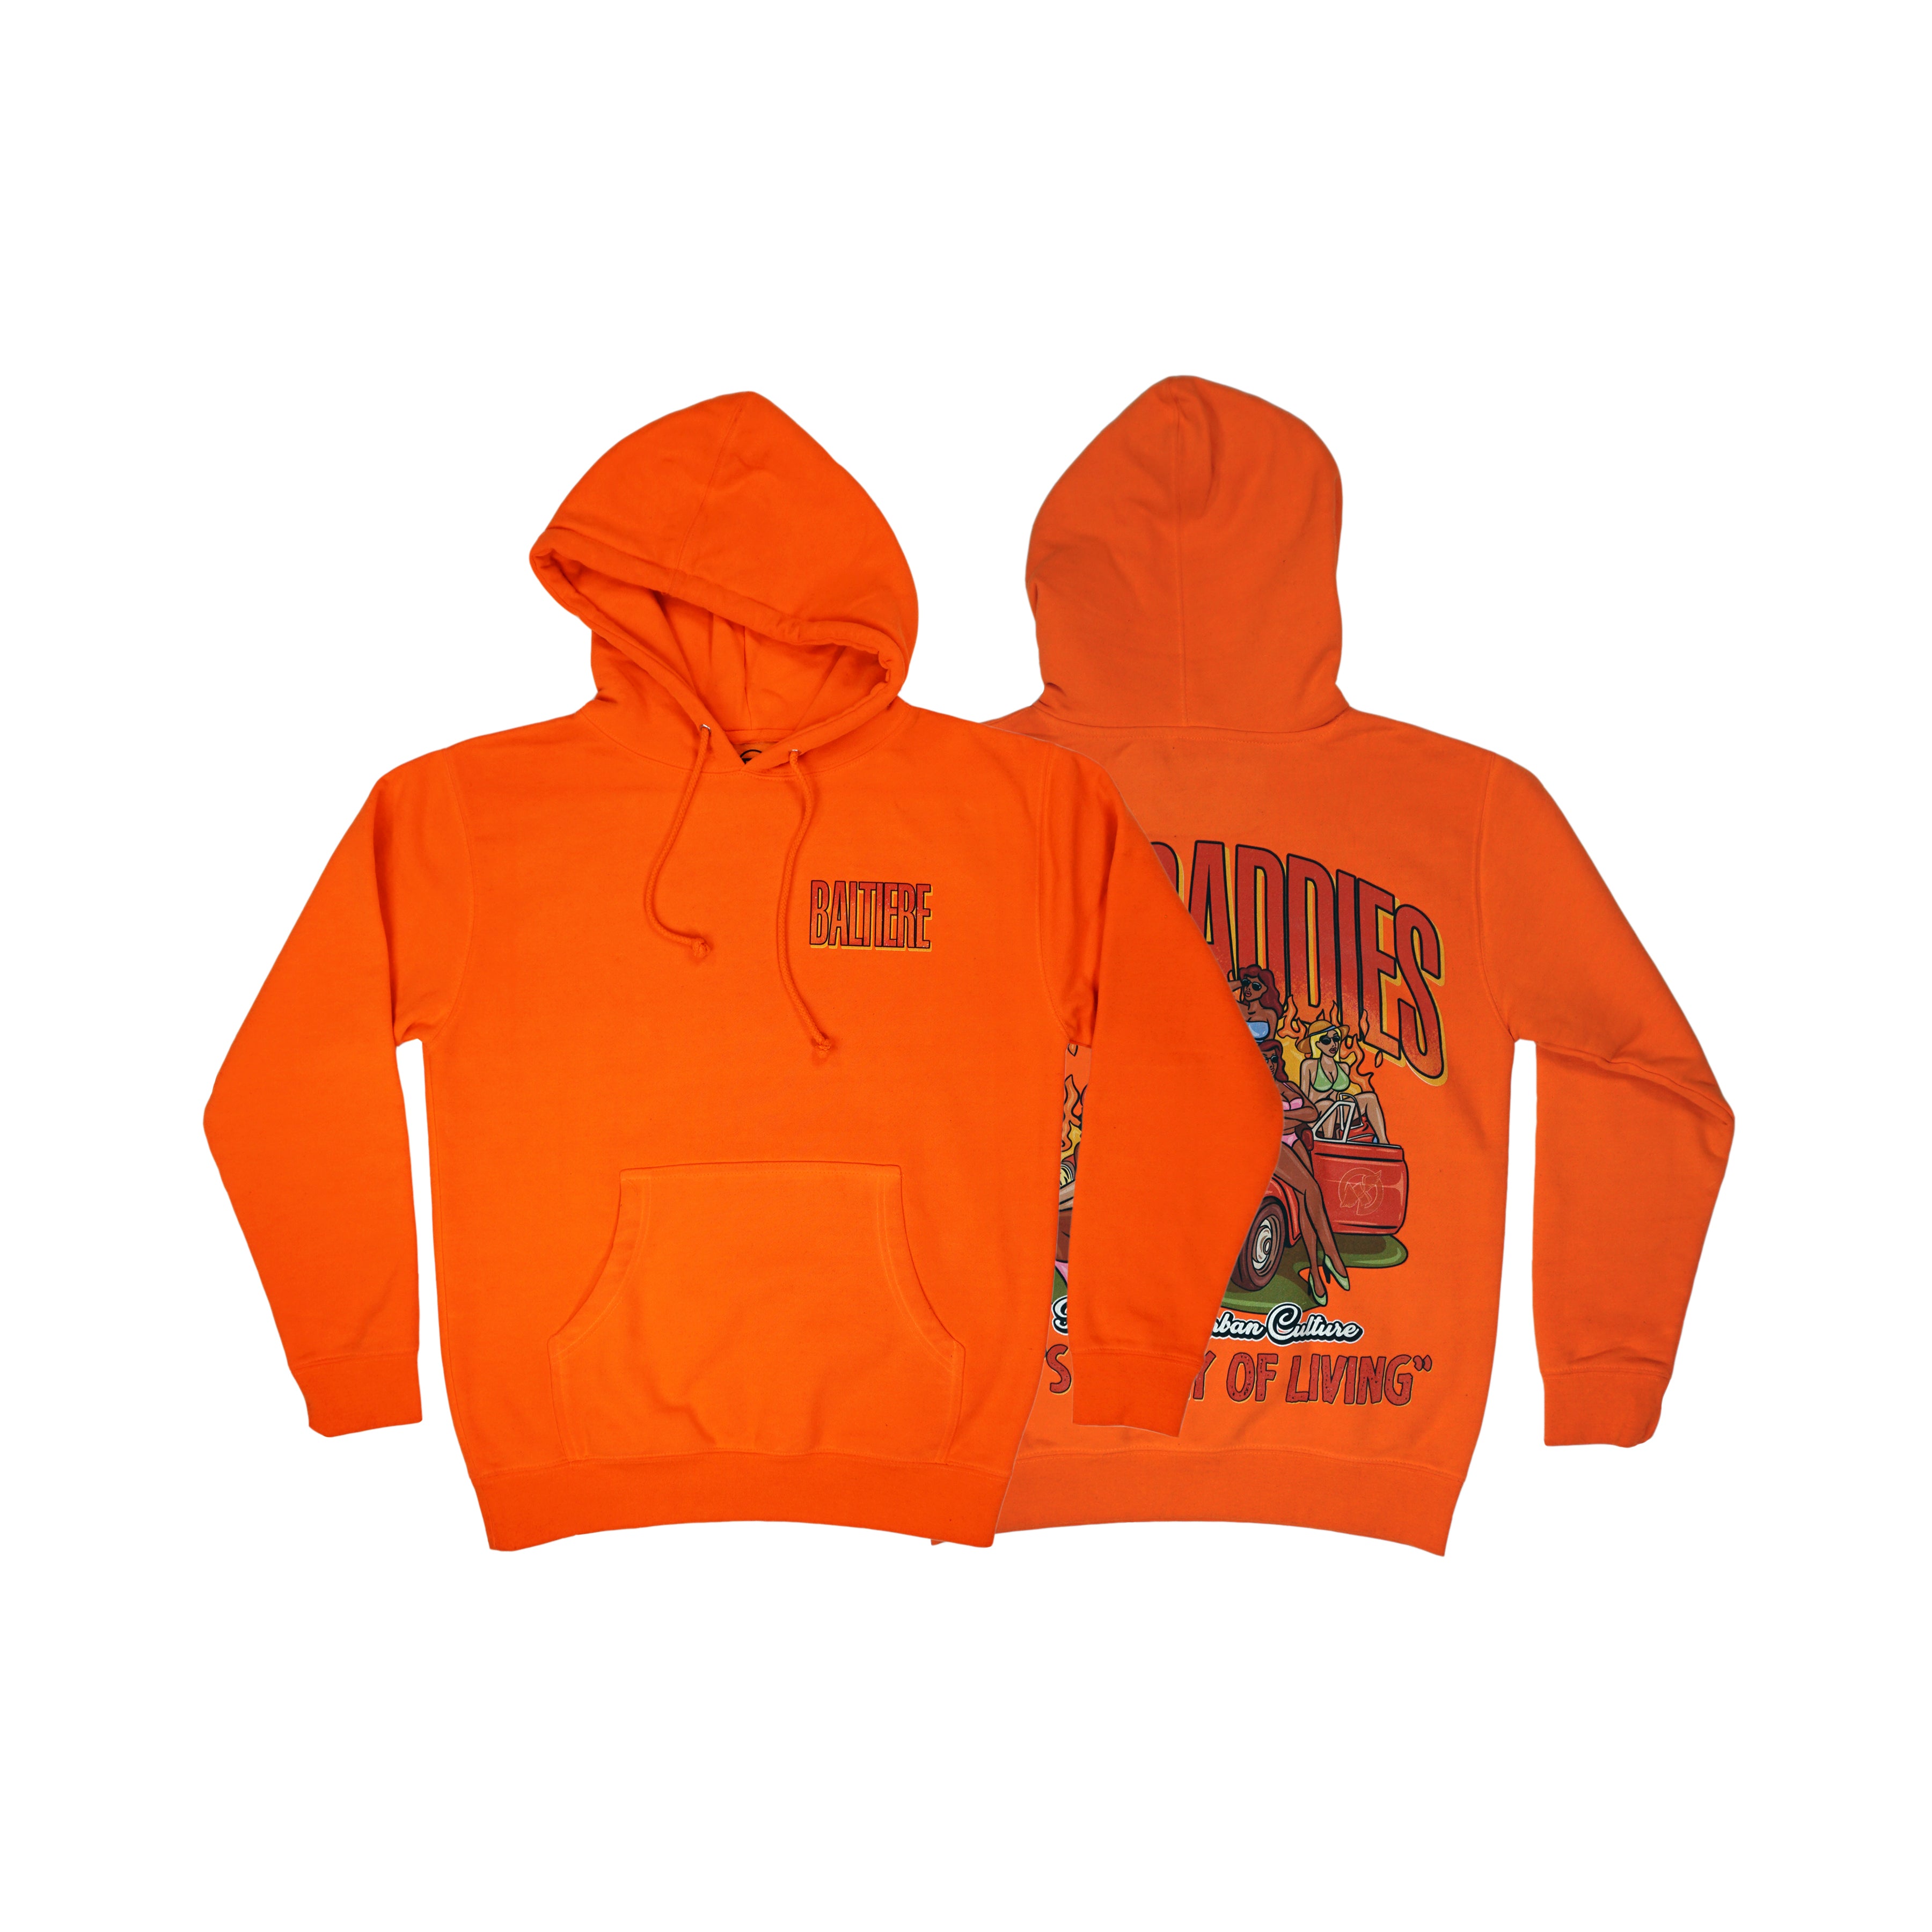 Baddies V2 Graphic Hoodie (Orange) – Baltiere Urban Culture